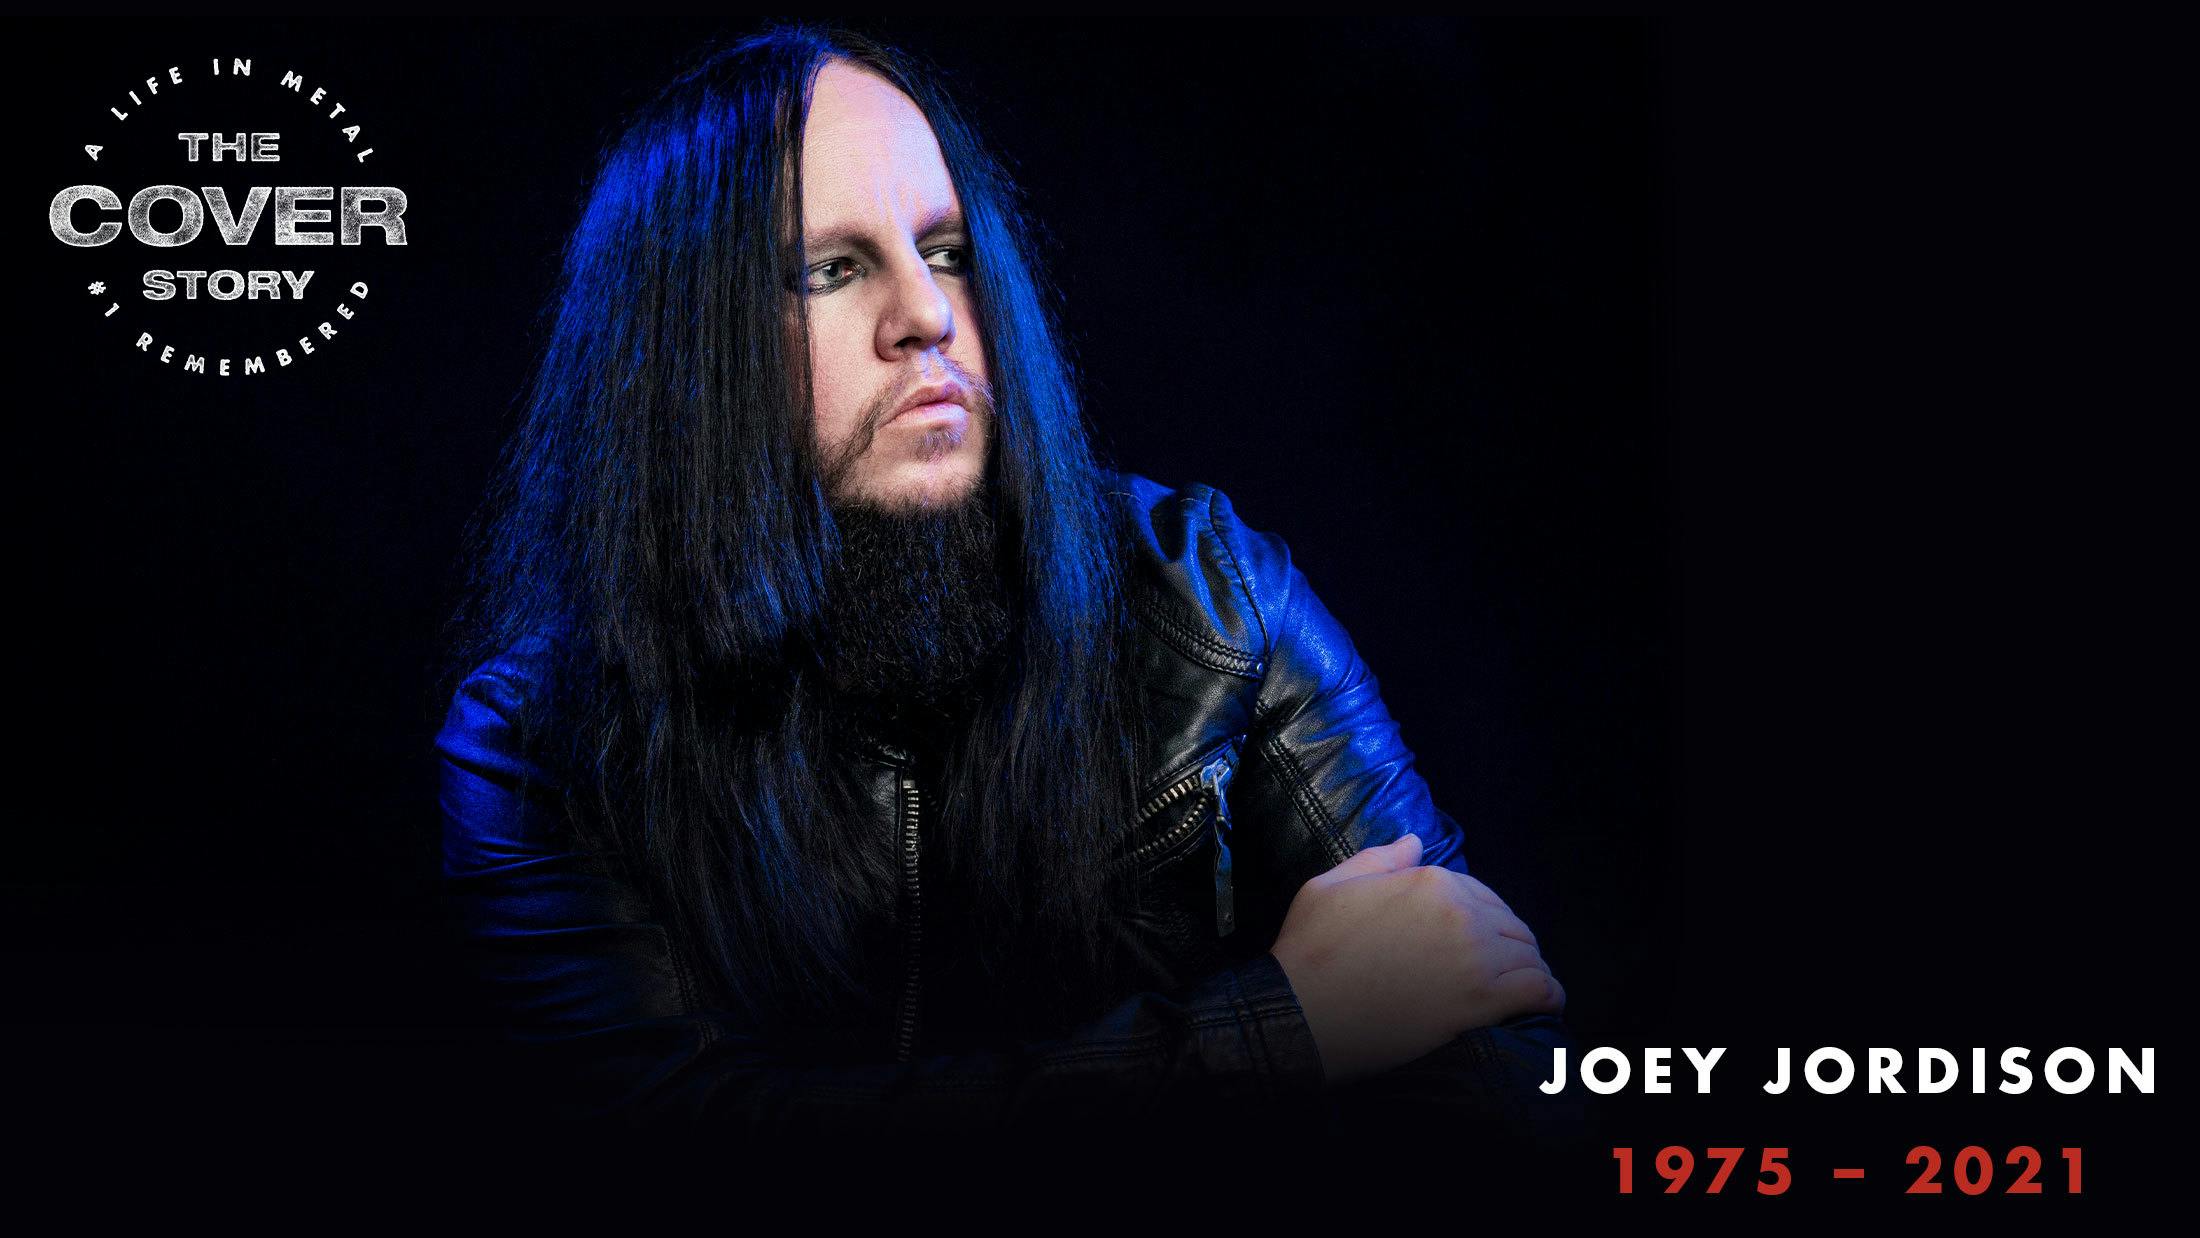 Joey Jordison loved metal, and metal loved Joey Jordison